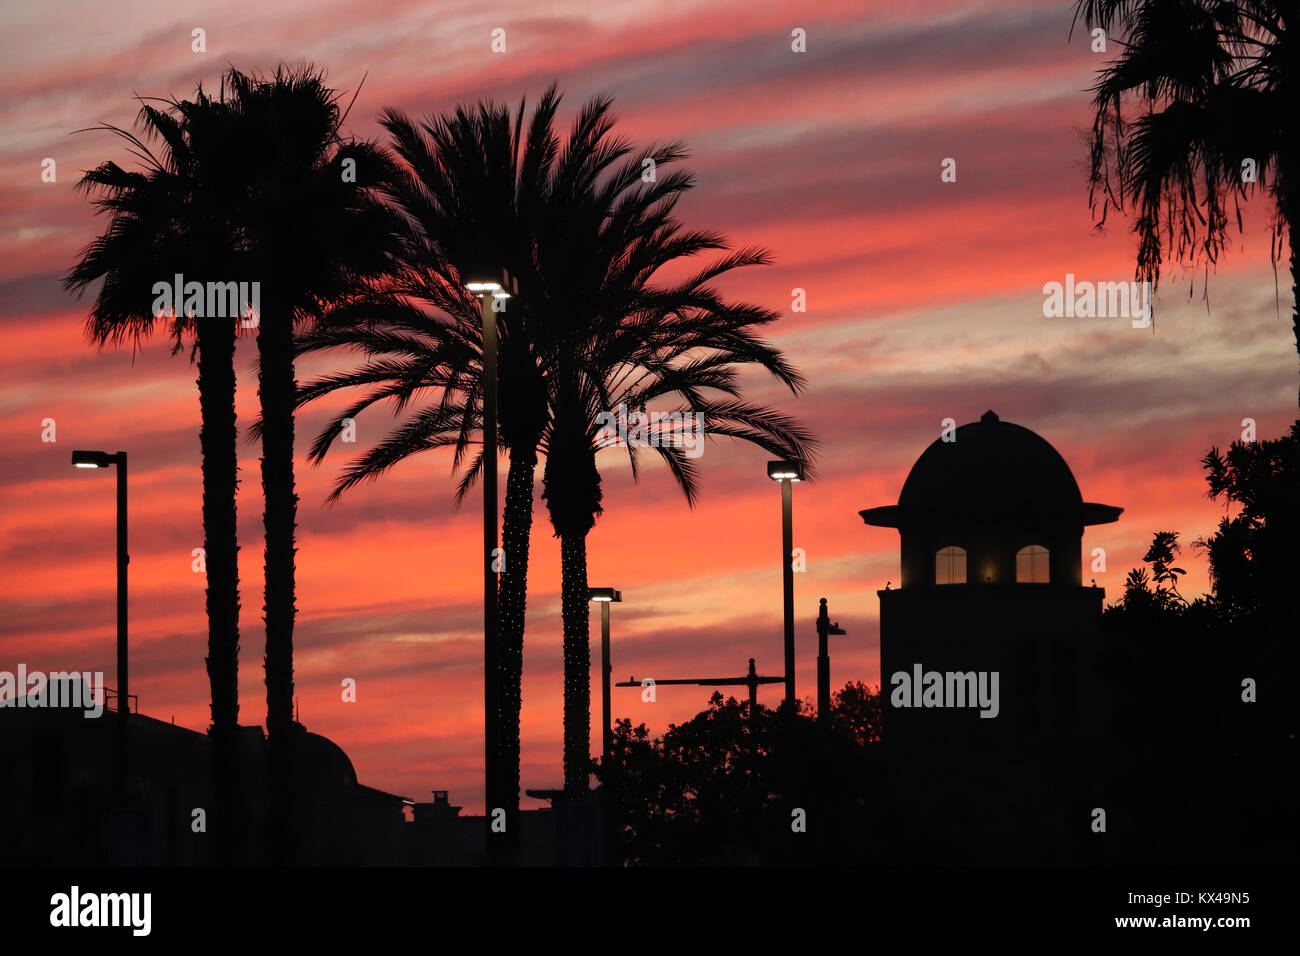 Quattro grandi palme stagliano contro un drammatico rosa e arancio cloud-riempito il cielo alla fine di una giornata invernale in California, un edificio a cupola,le luci vicino Foto Stock